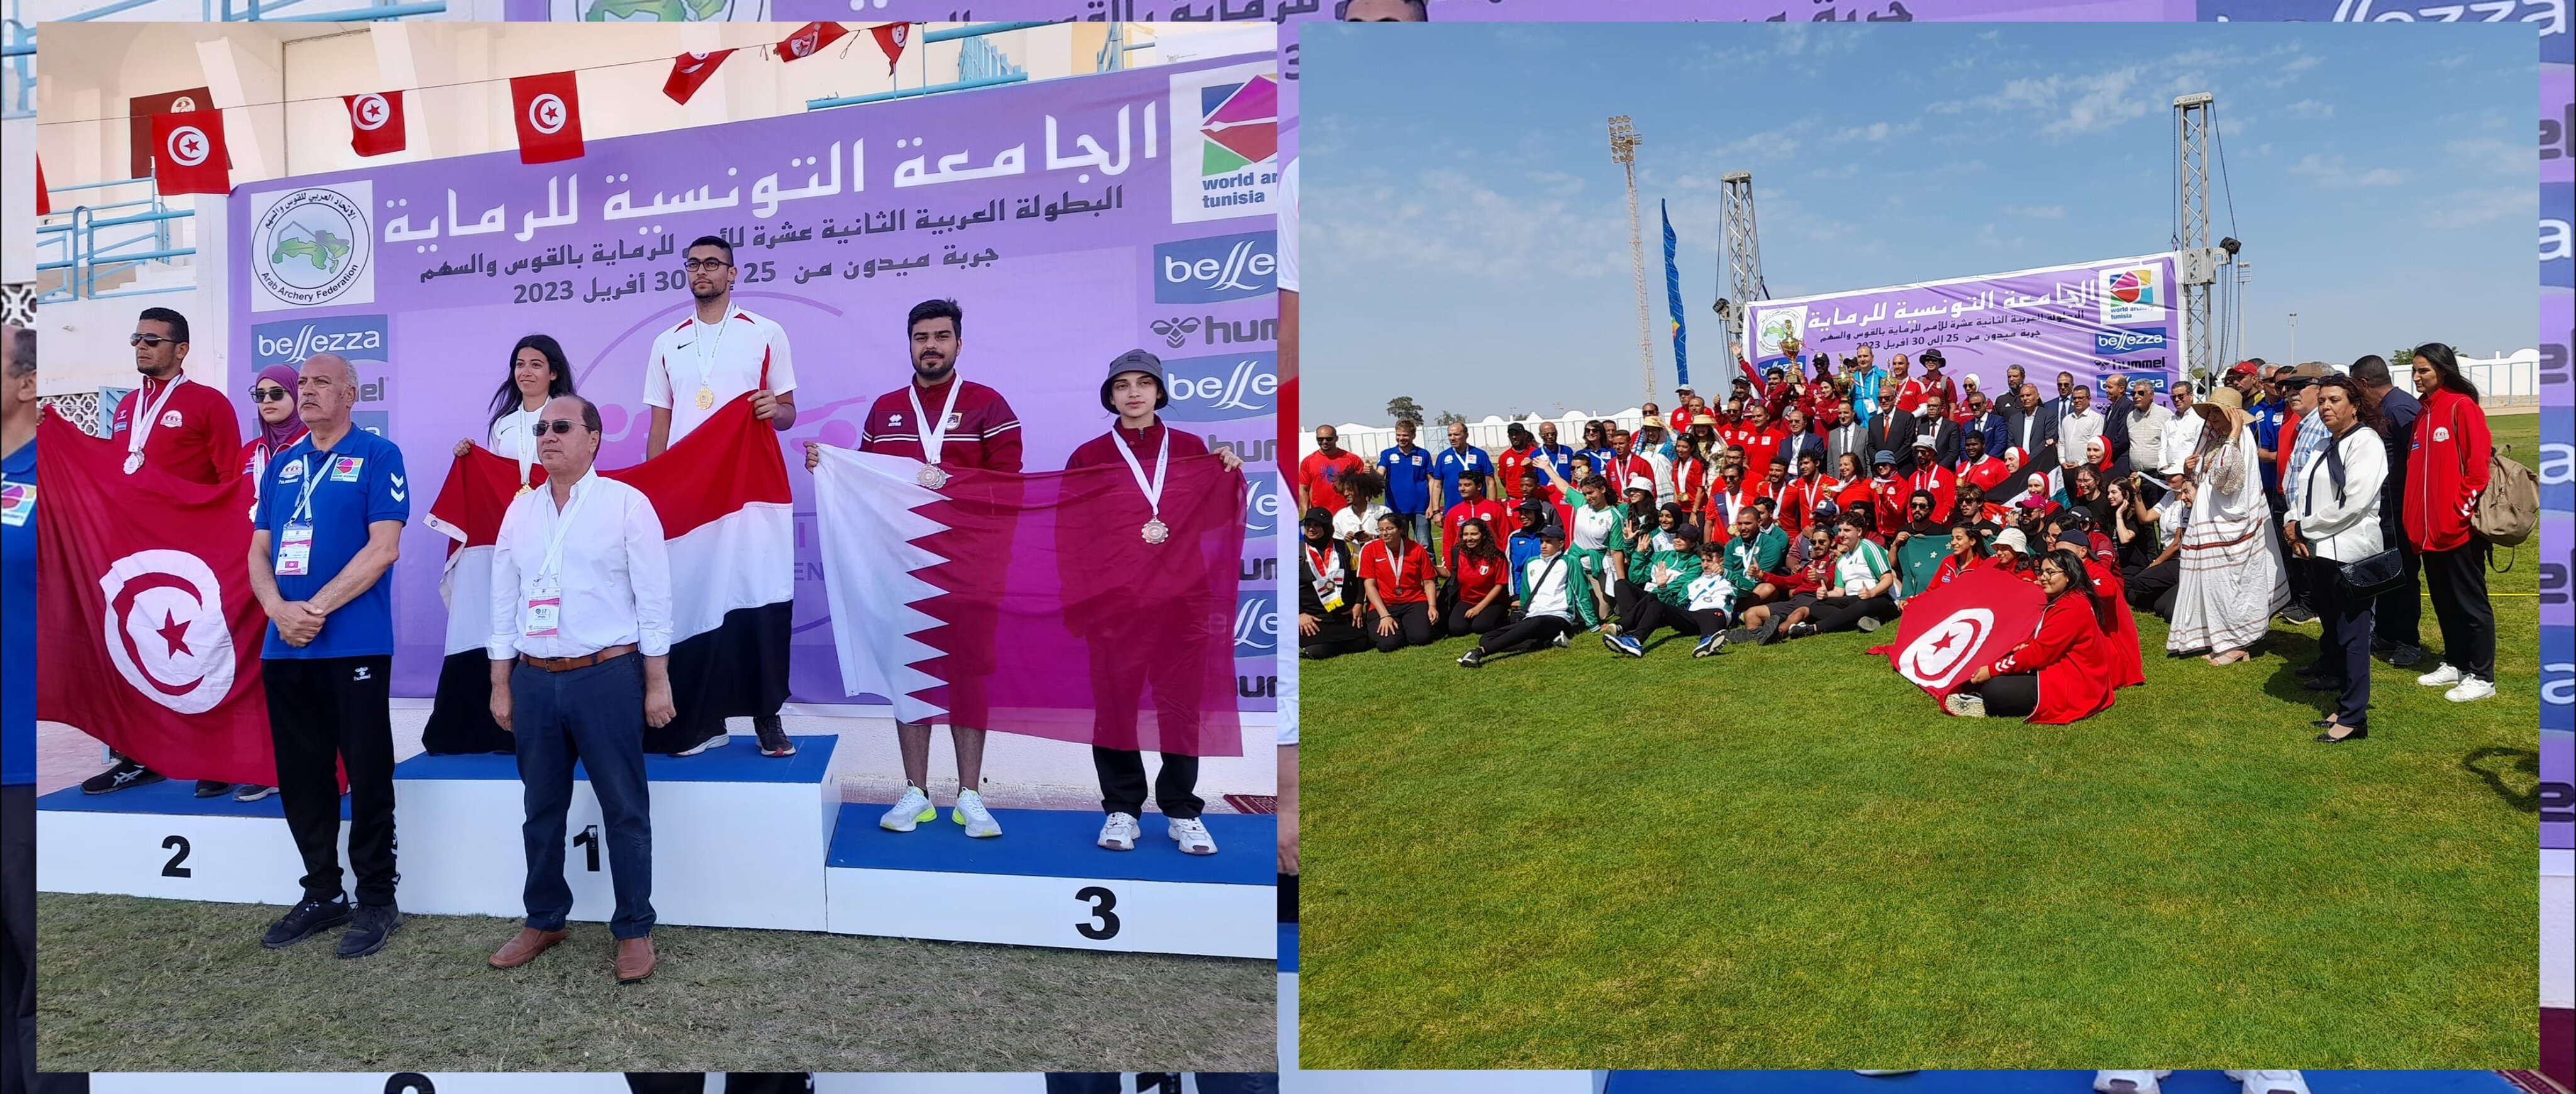 البطولة العربية الثانية عشرة للرماية بالقوس والسهم بجربة..    حصيلة متميزة لتونس ب26 ميدالية ملونة